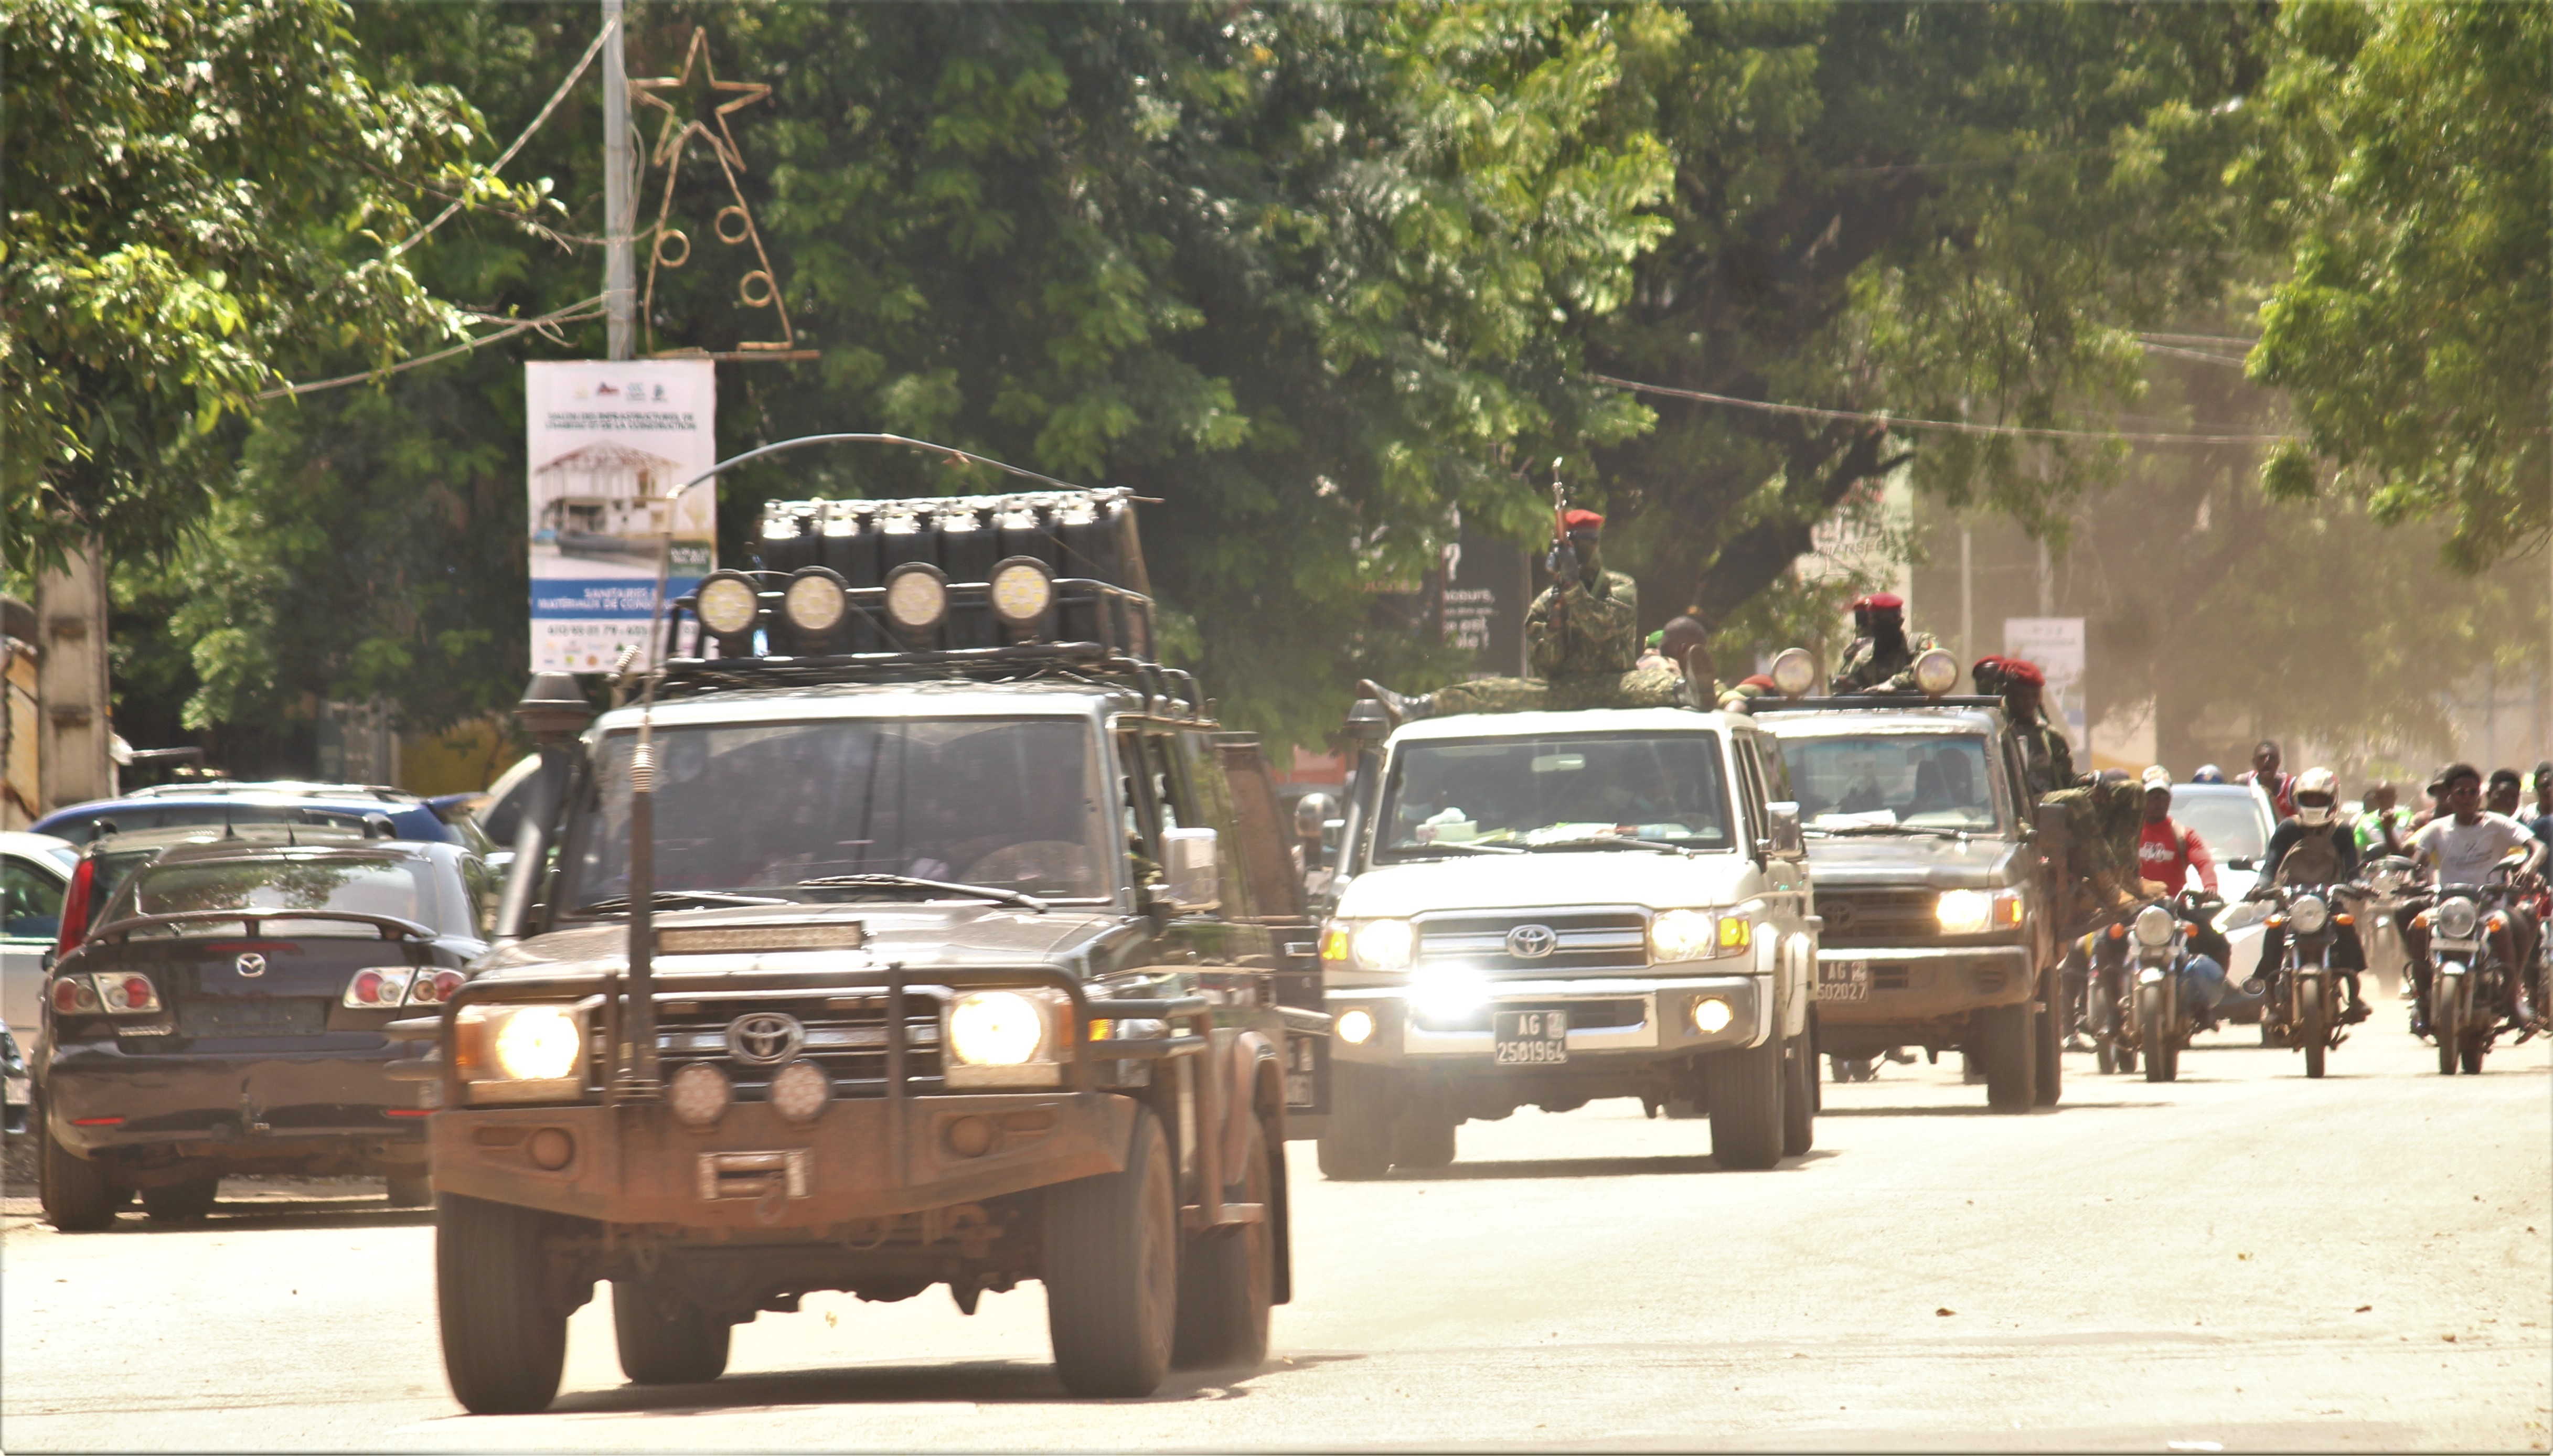 Source: Aboubacarkhoraa, "Parade des militaire dans les rue de Kaloum après le Coup d'état 2021 en Guinée," Wikimedia Commons. https://commons.wikimedia.org/wiki/File:Coup_d%27%C3%A9tat_2021_en_Guin%C3%A9e.jpg